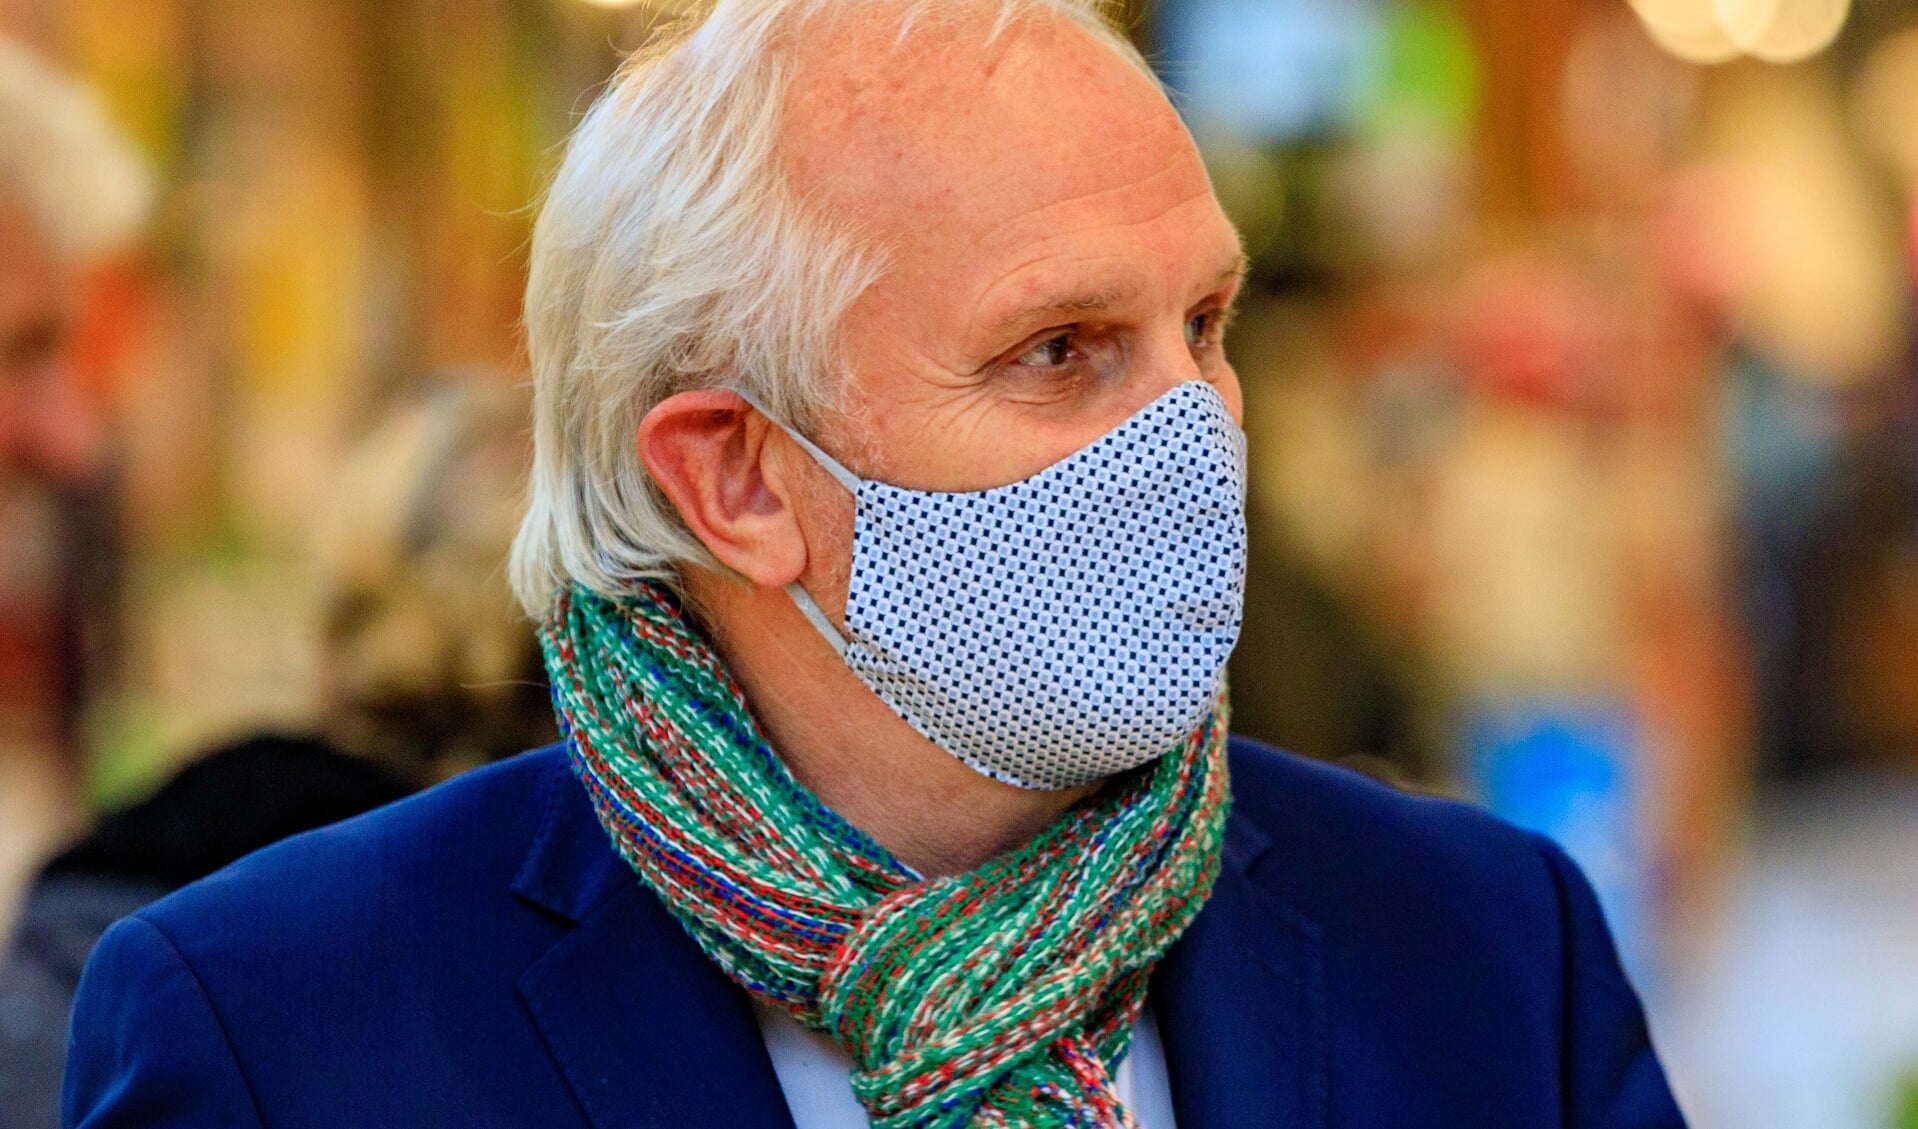 Burgemeester Pieter Broertjes doet in een video een oproep om met elkaar het virus te blijven aanvallen.